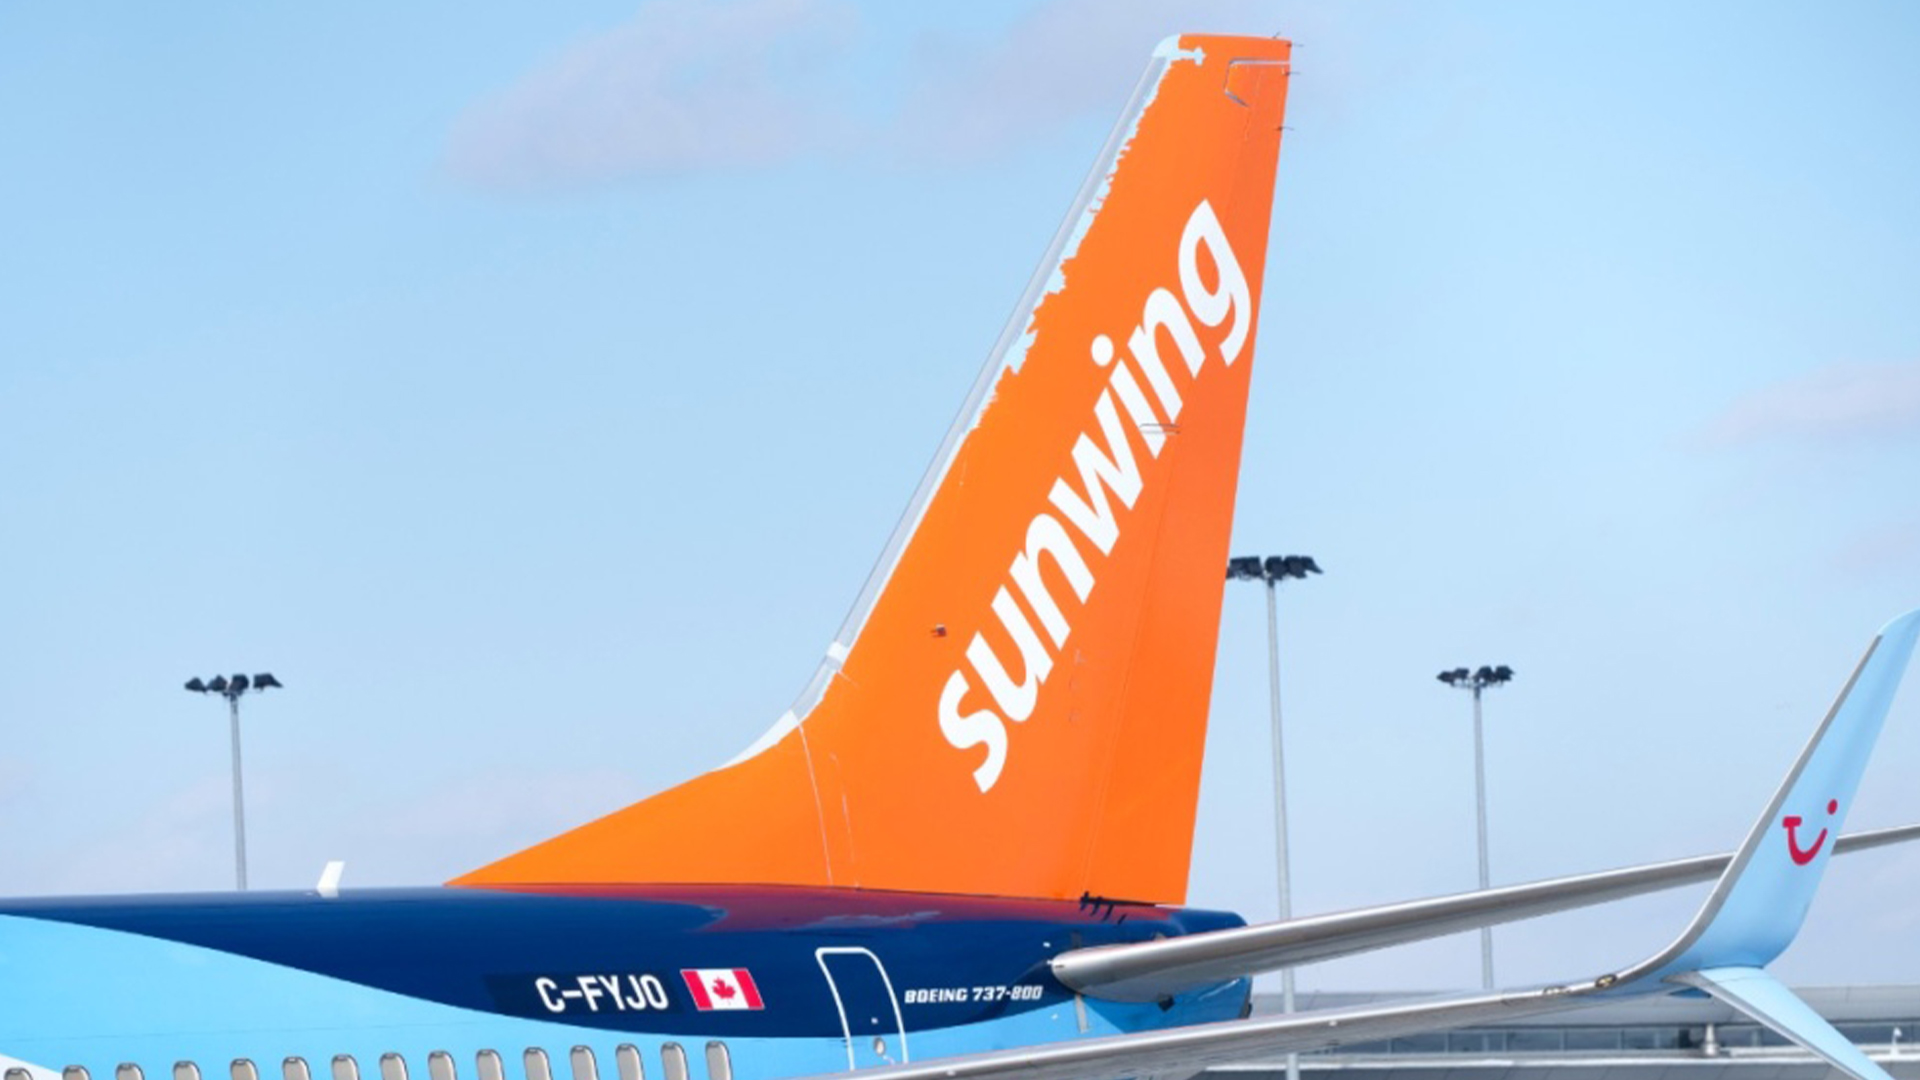 Des clients de Sunwing sont toujours en colère en raison des nombreux retards et des annulations de vols, qui ont coincé plusieurs personnes dans le Sud.